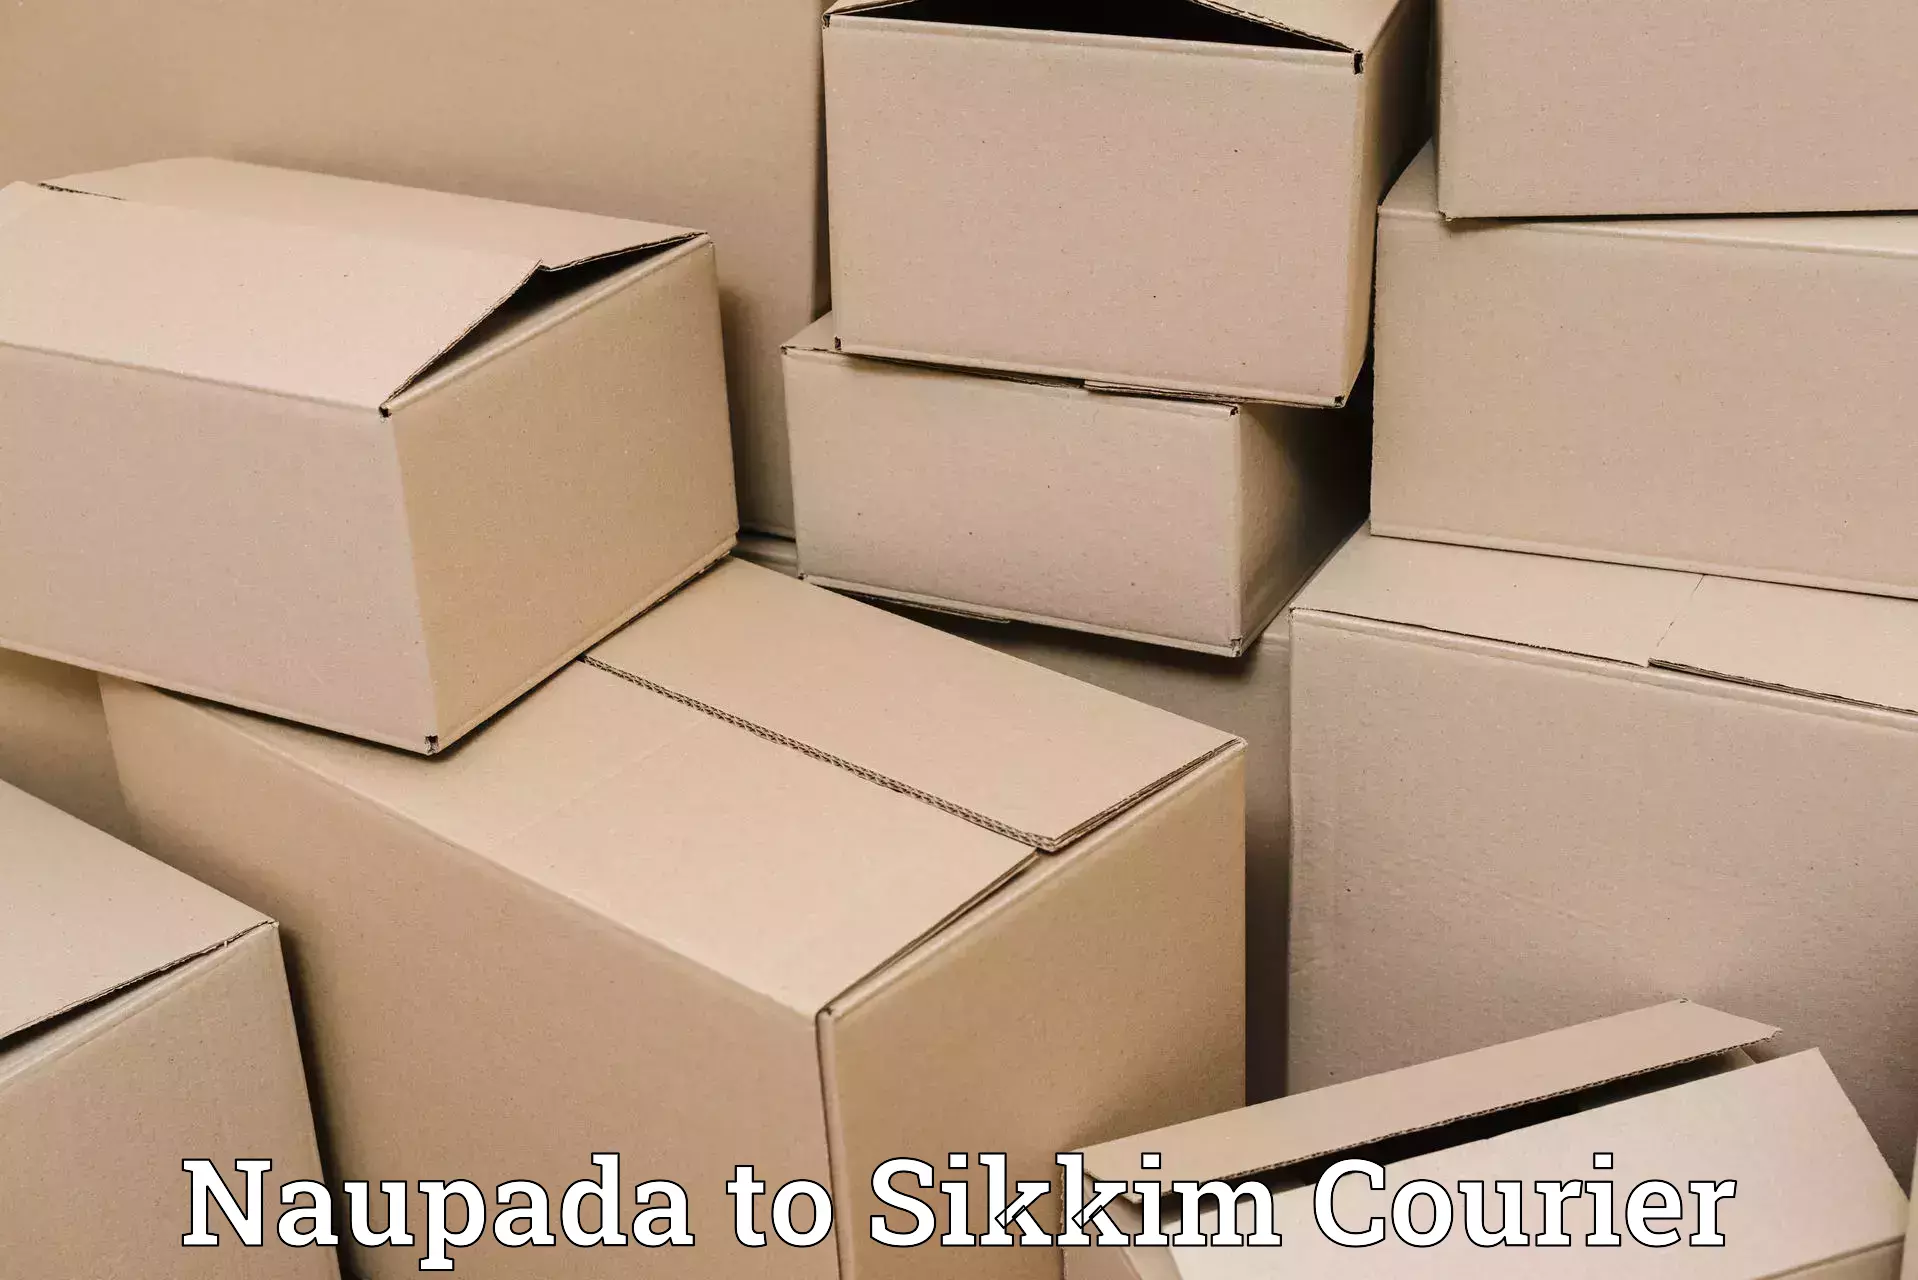 Express logistics service Naupada to Sikkim